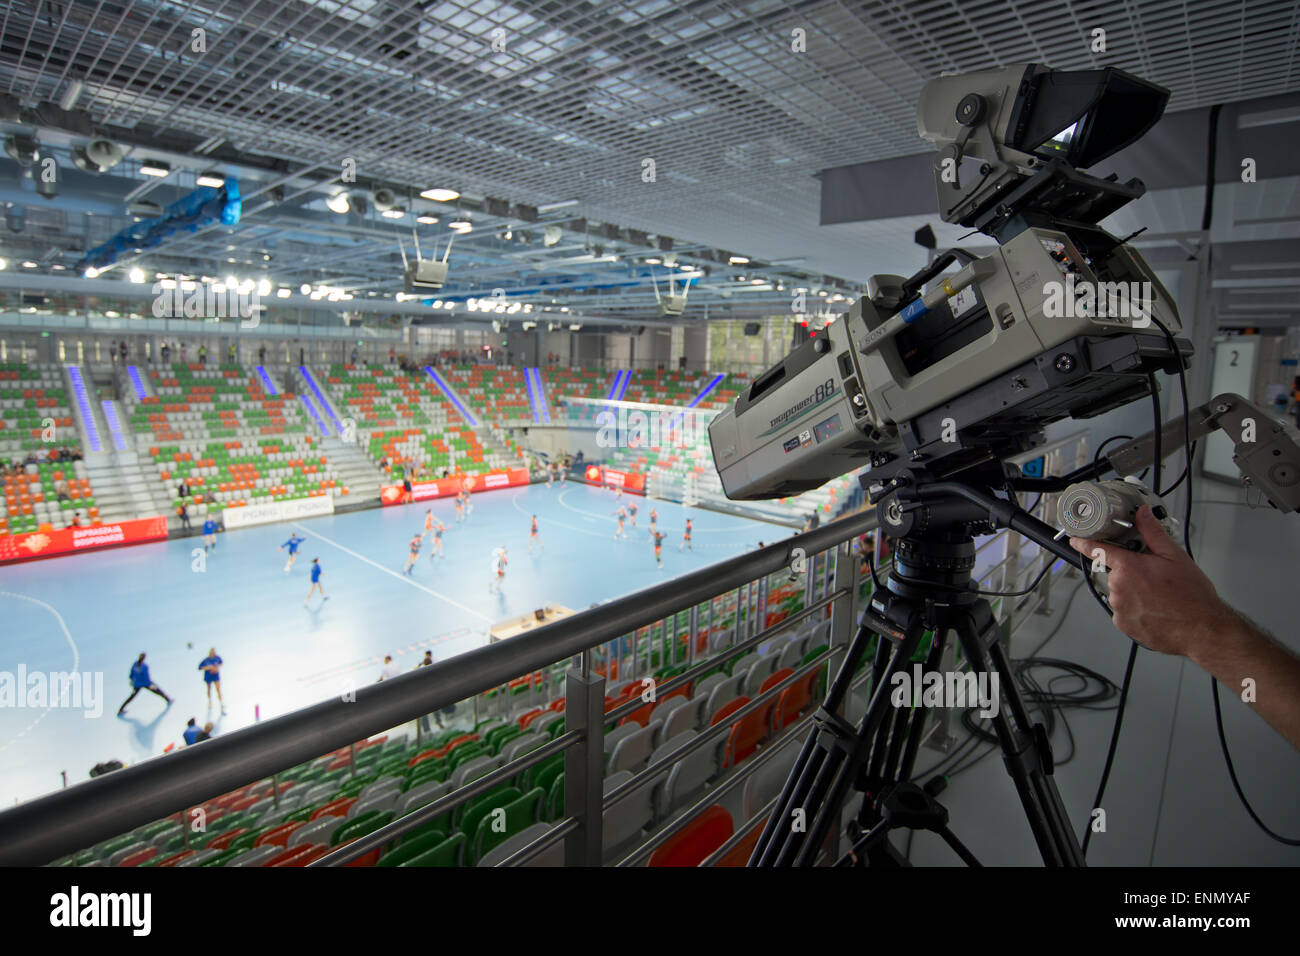 LUBIN, Pologne - 7 septembre 2014 : caméra de télévision avant match PGNiG Superleague en handball Femmes Banque D'Images